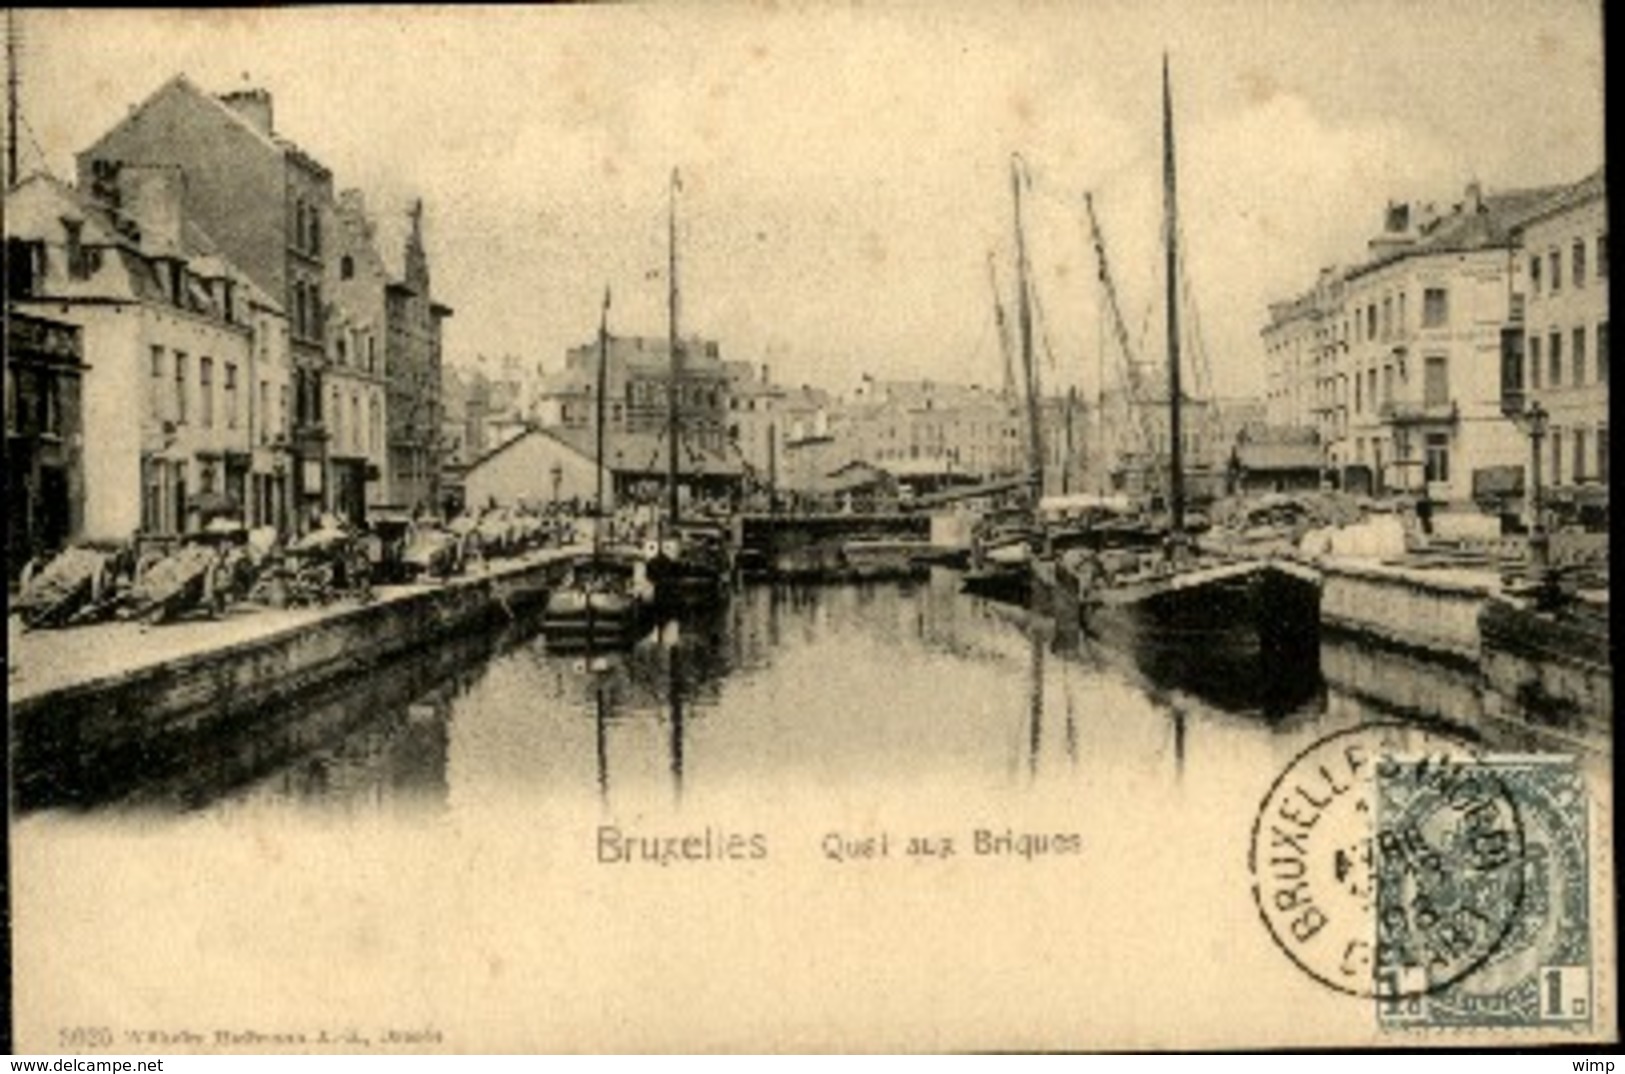 BRUXELLES : Quai Aux Briques - Maritime